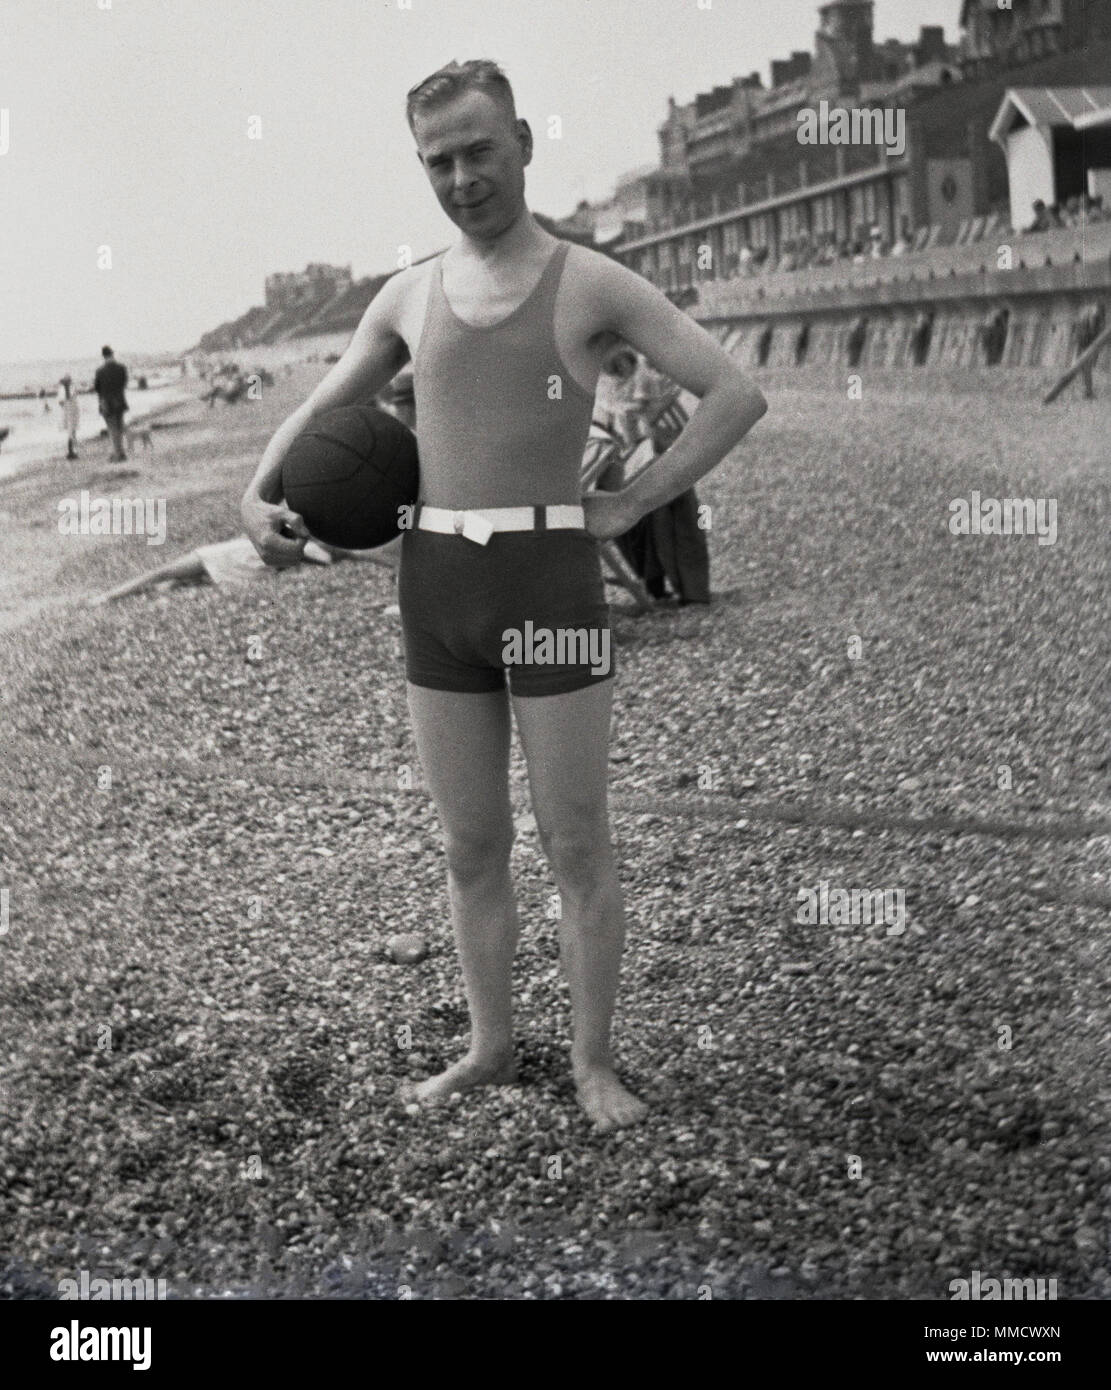 1930s, uomo adulto indossando il costume da bagno dell'epoca, un elegante  pezzo gilet e shorts, in piedi su una spiaggia di ciottoli beacjh tenendo  una palla, Inghilterra, Regno Unito Foto stock -